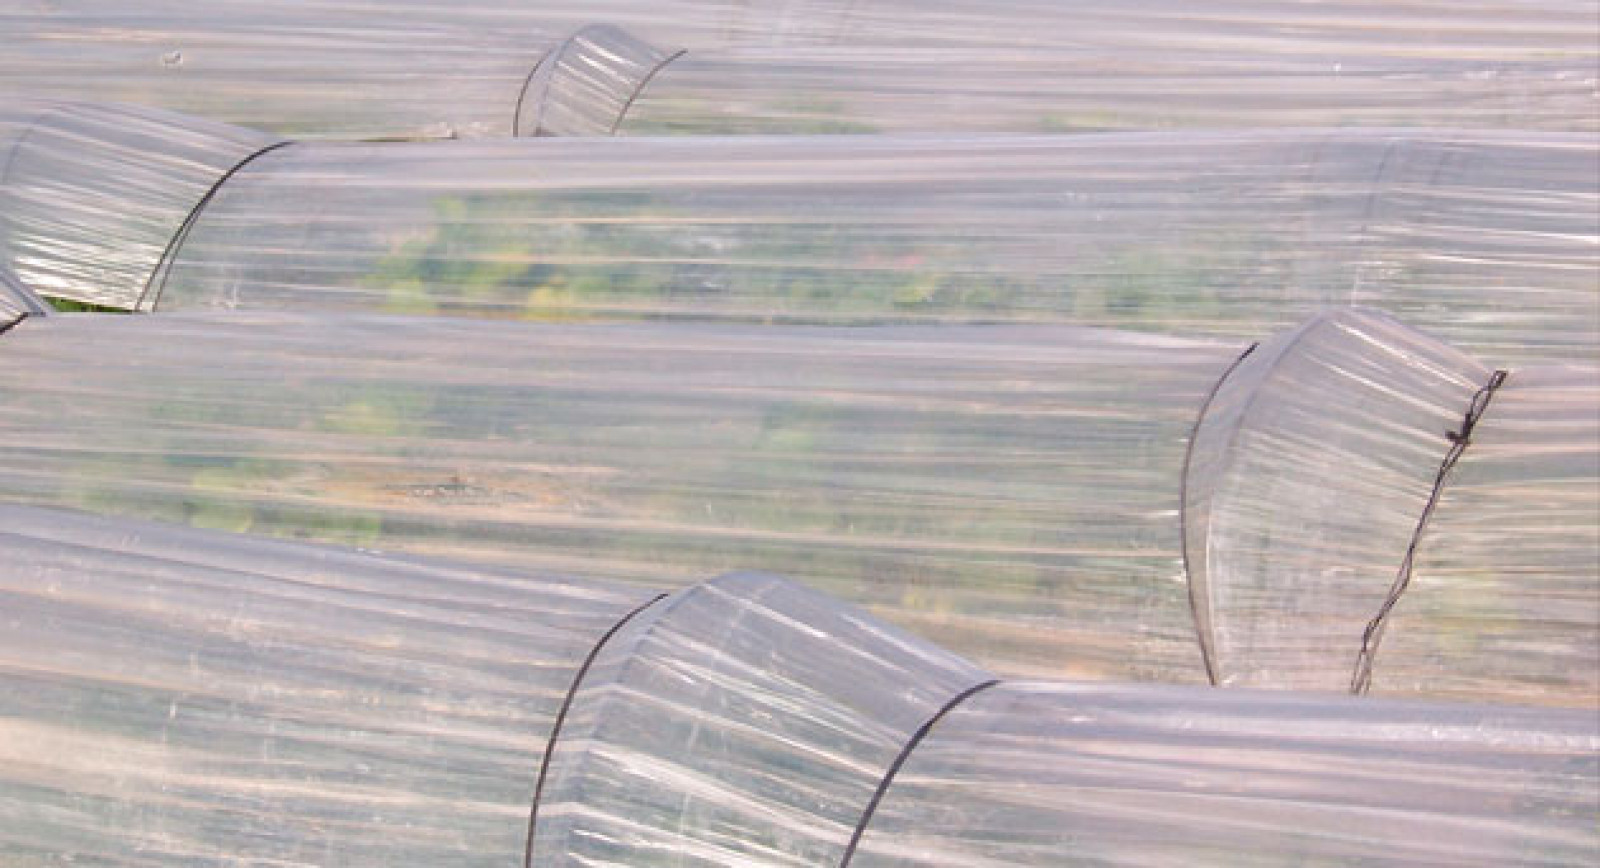 Los costes ocultos de la agricultura industrial, por Javier Calatrava.